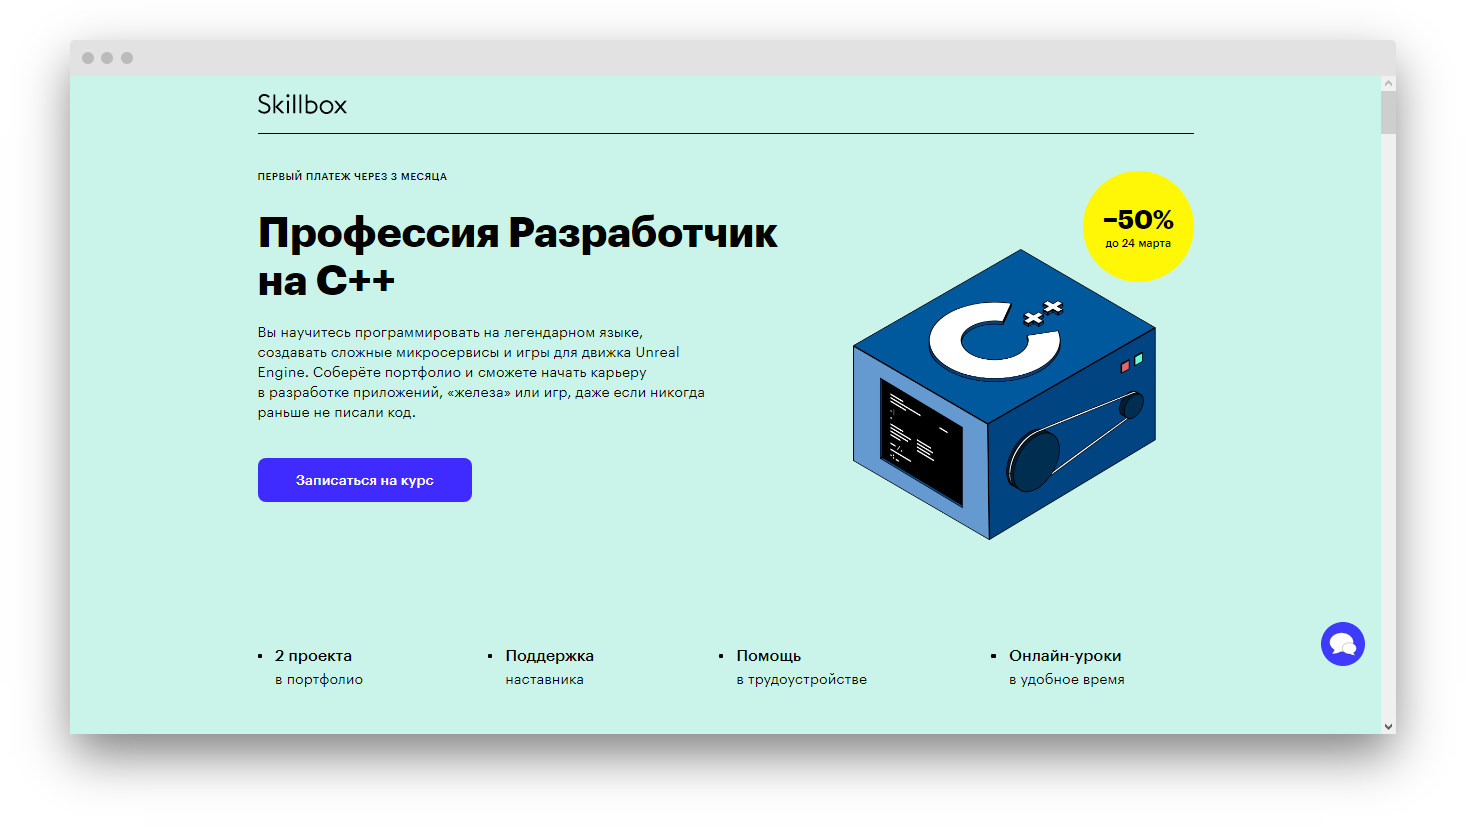 Бесплатный курс программирования dpo edu sigma ru. Наставник в программировании. C++ для профи. Io язык программирования. Программирование в коробке.